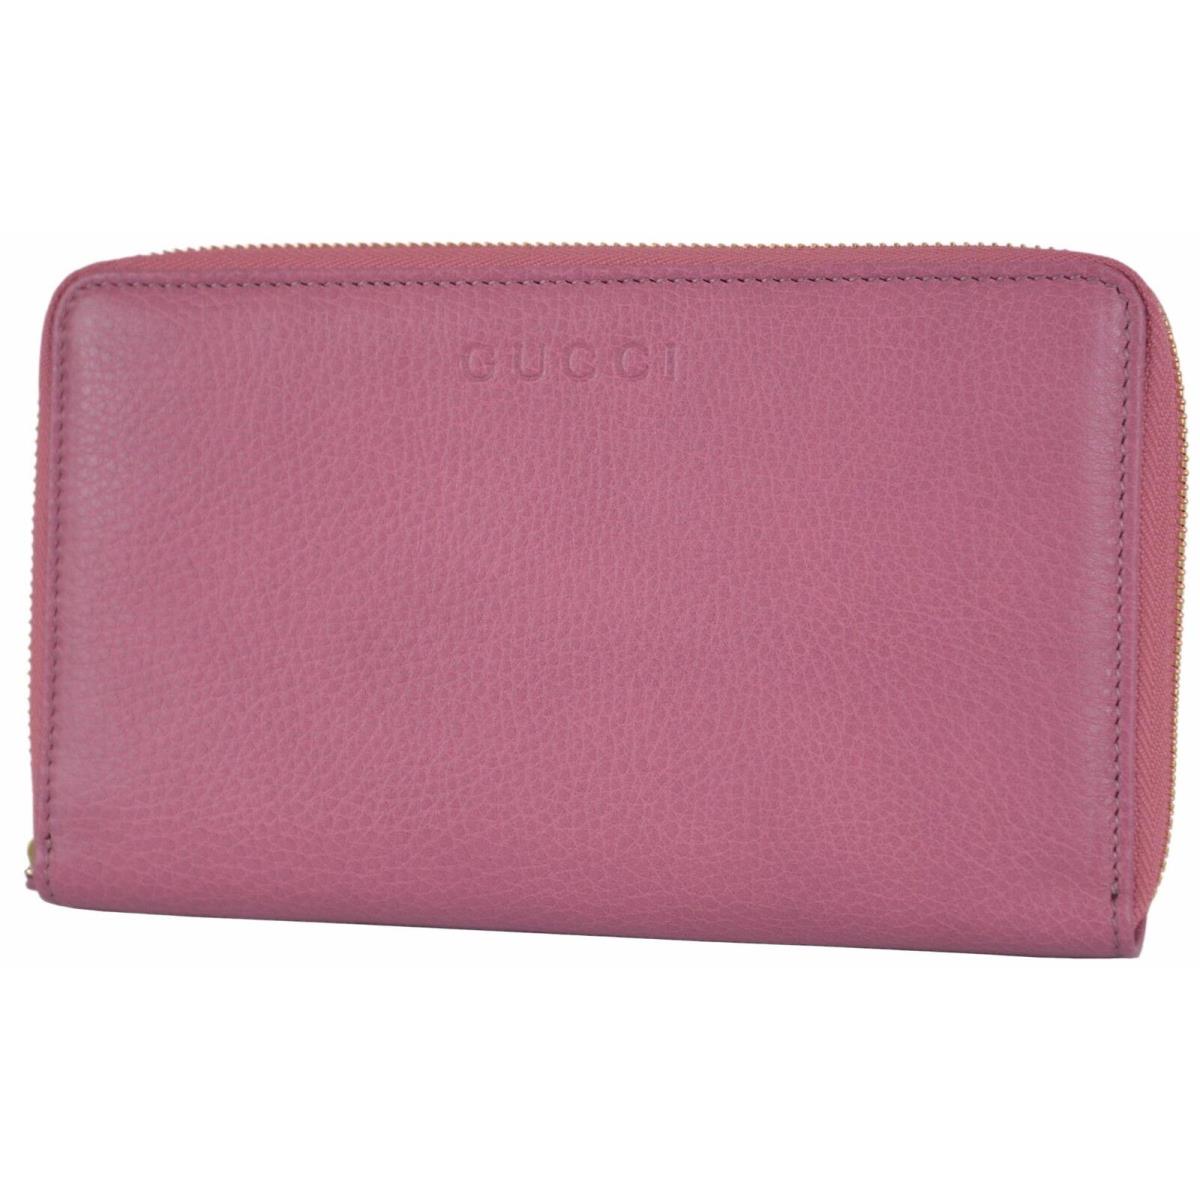 Gucci 321117 XL Pink Textured Leather Zip Around Travel Wallet Clutch